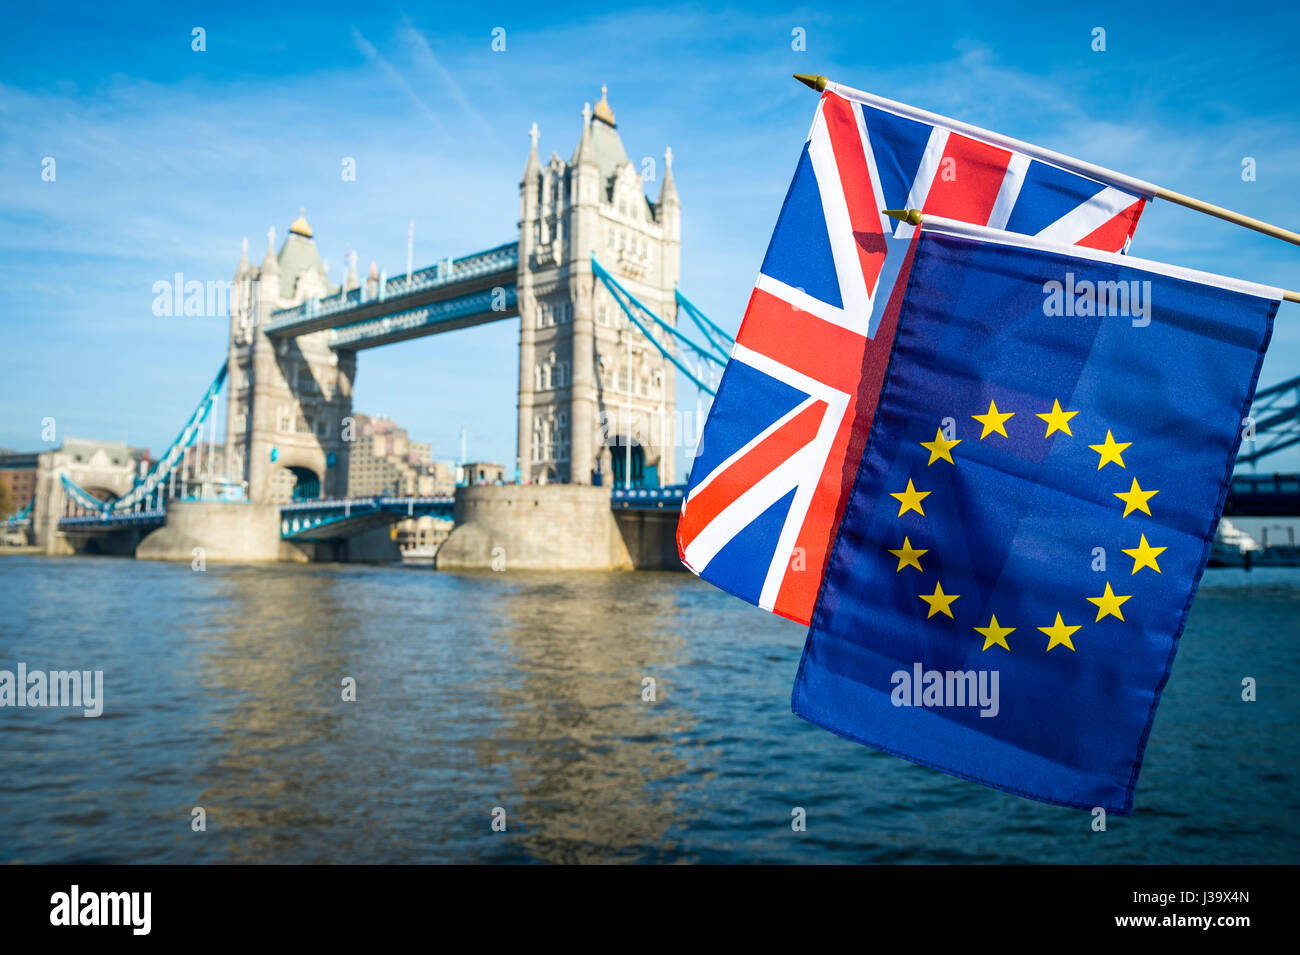 Ue Unione europea e Regno Unito Regno Unito bandiere insieme in Brexit la solidarietà di fronte al London, England skyline al Tower Bridge Foto Stock